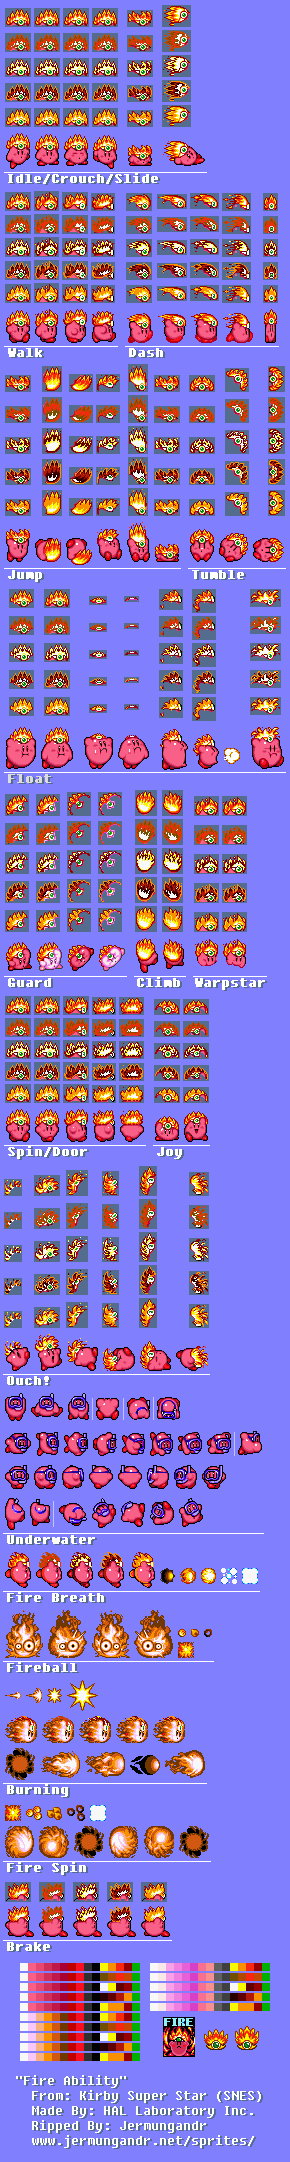 Kirby Super Star / Kirby's Fun Pak - Fire Kirby